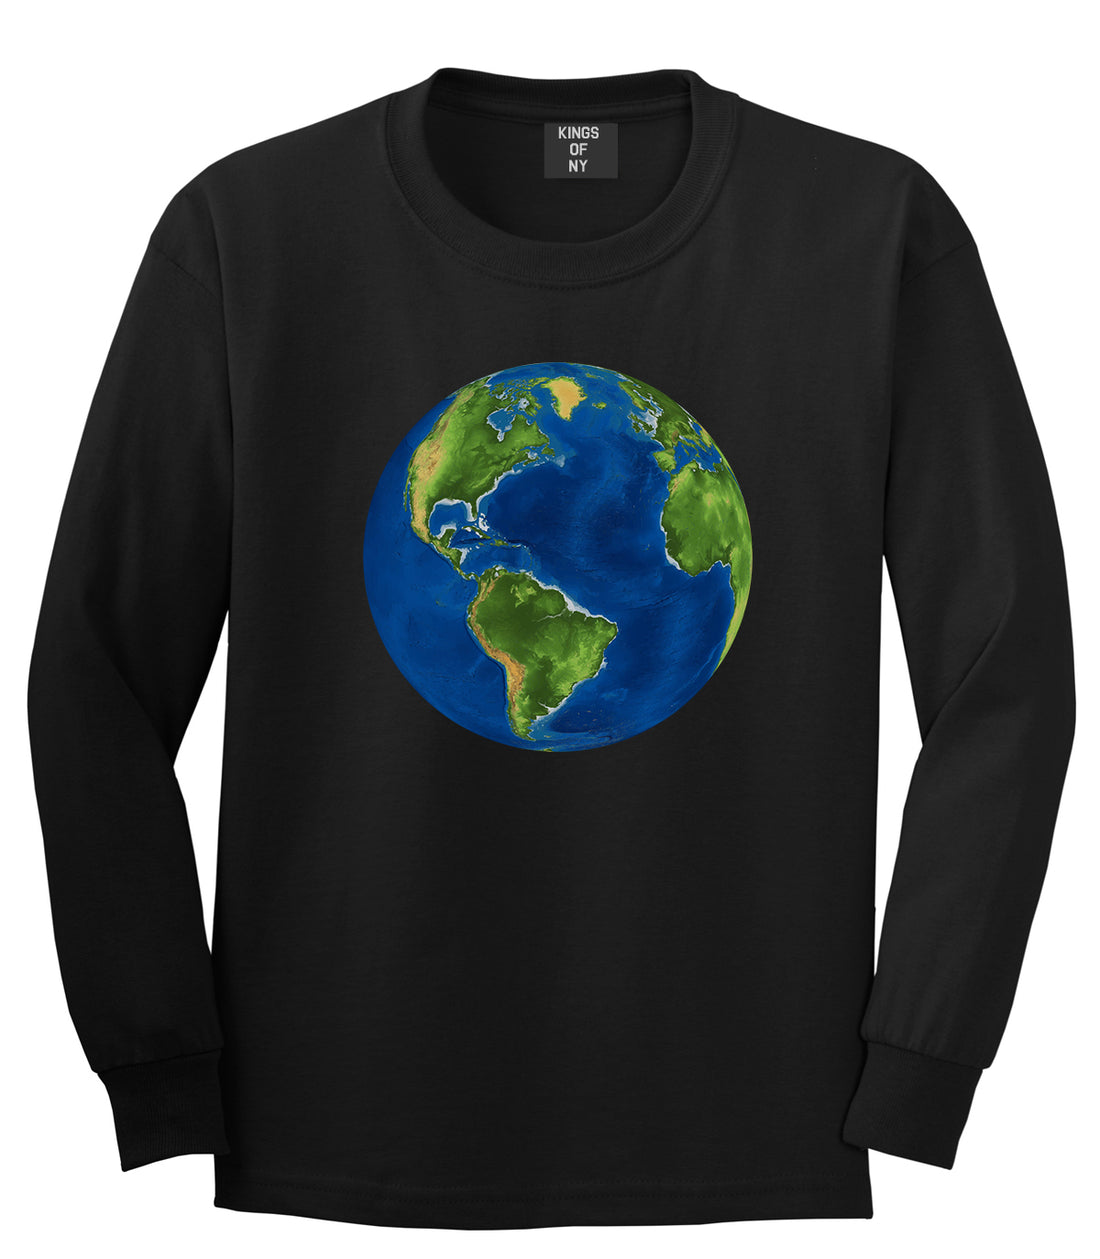 Earth Globe Mens Black Long Sleeve T-Shirt by Kings Of NY